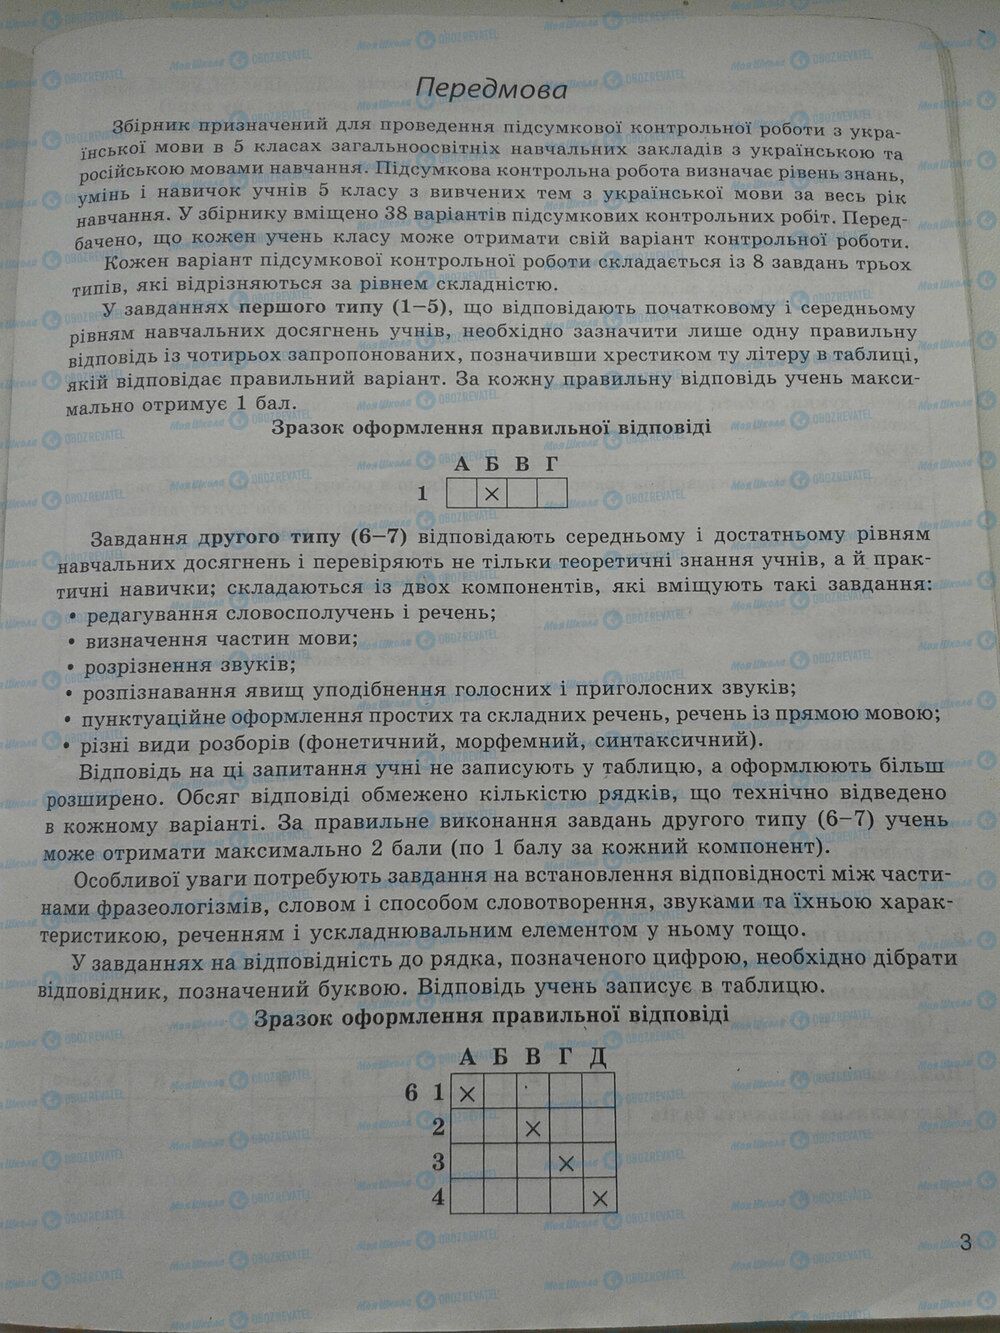 ГДЗ Укр мова 5 класс страница стр. 3